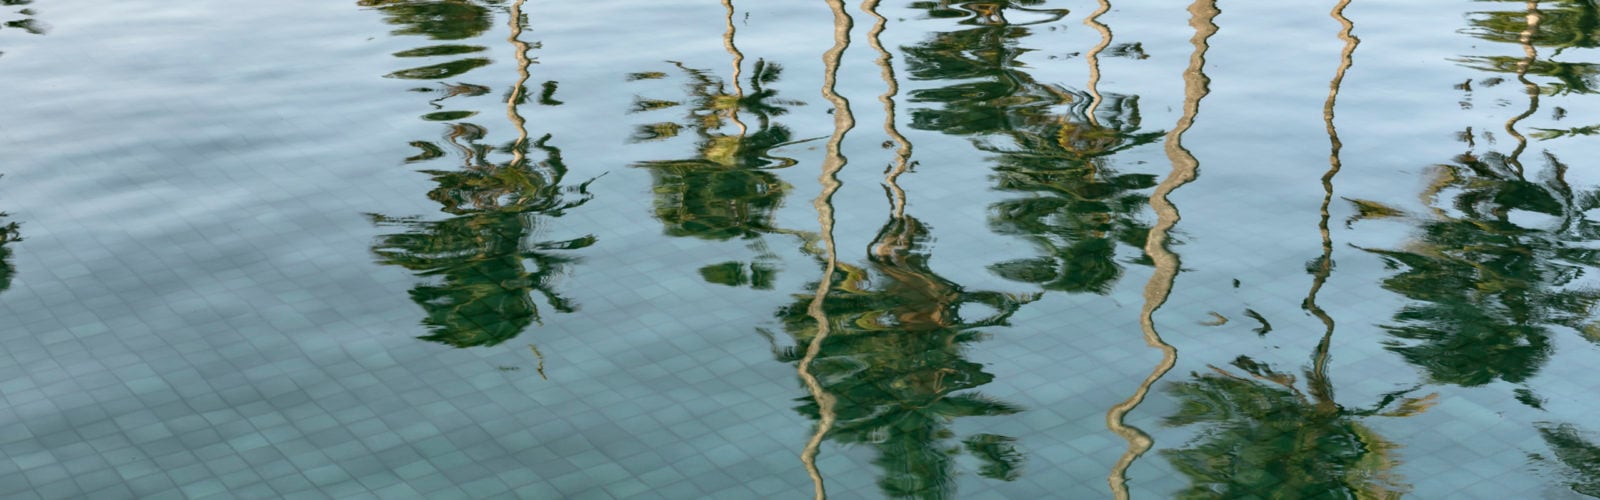 amanwella-pool-reflections